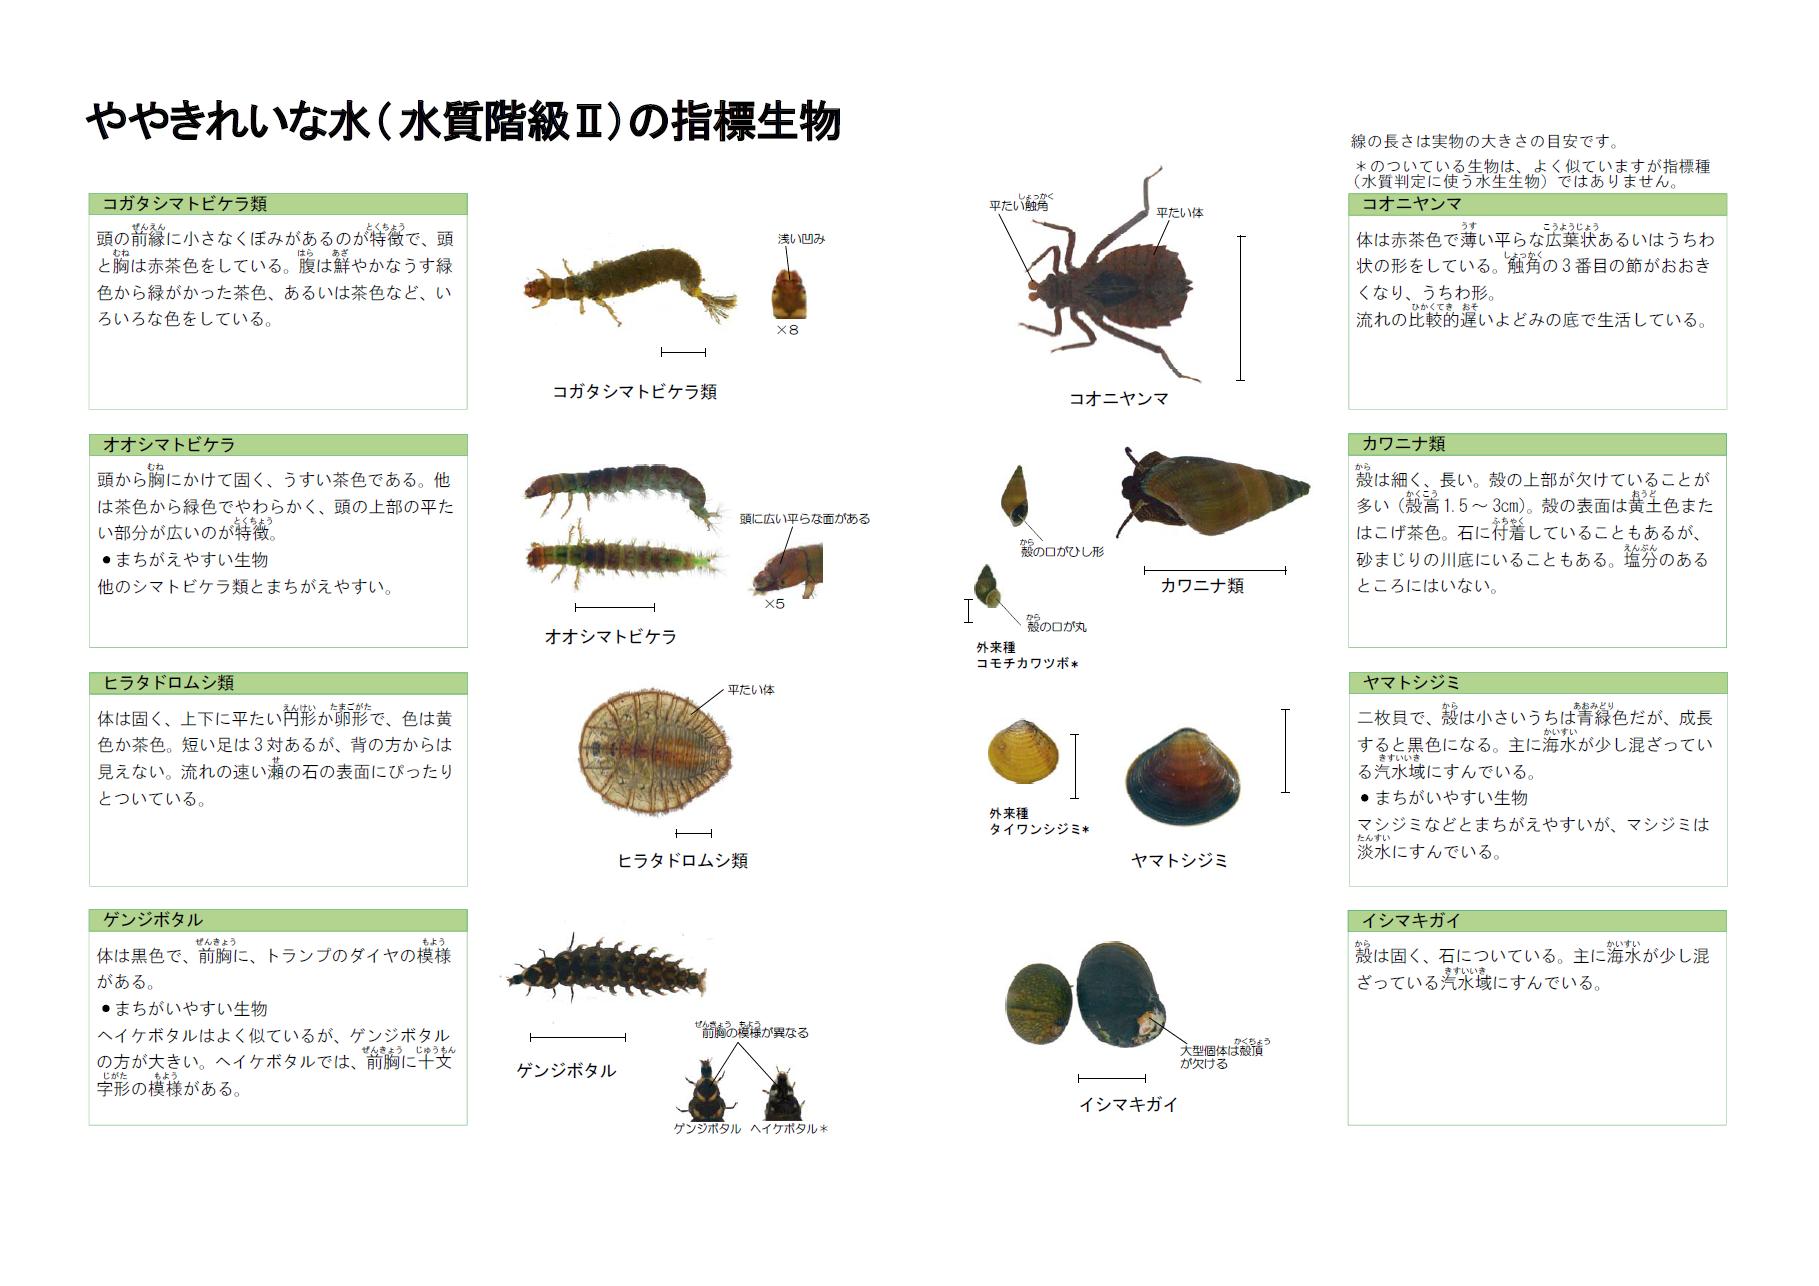 全国水生生物調査 川の生きものを調べよう 青森県庁ウェブサイト Aomori Prefectural Government